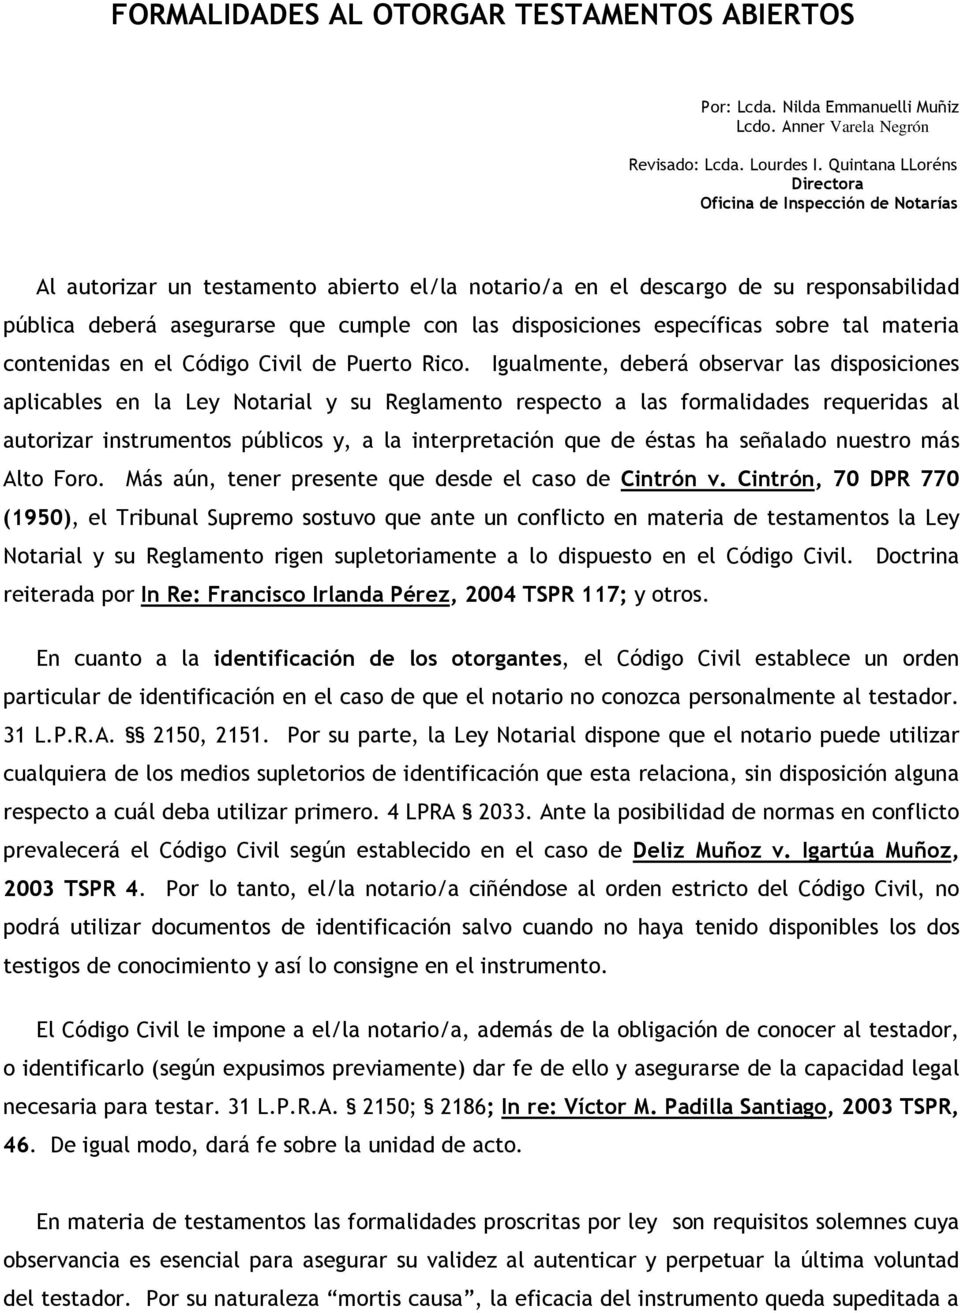 disposiciones específicas sobre tal materia contenidas en el Código Civil de Puerto Rico.